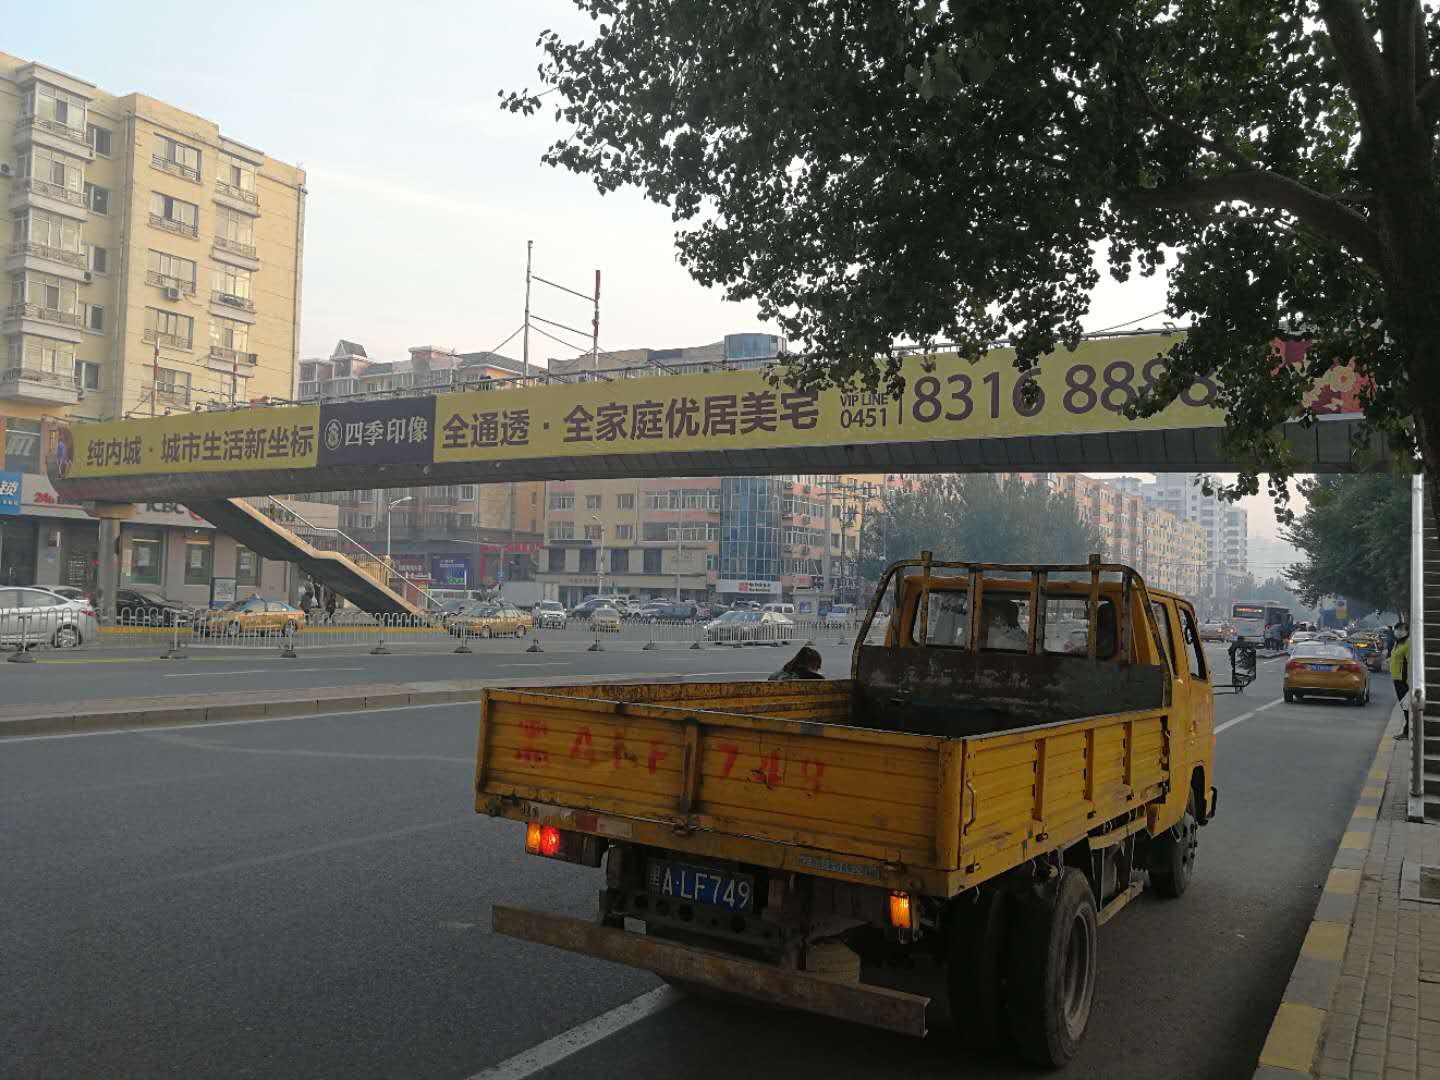 黑龙江哈尔滨动力区哈平路和幸福路交口处建筑文化宫人行过街天桥单面大牌